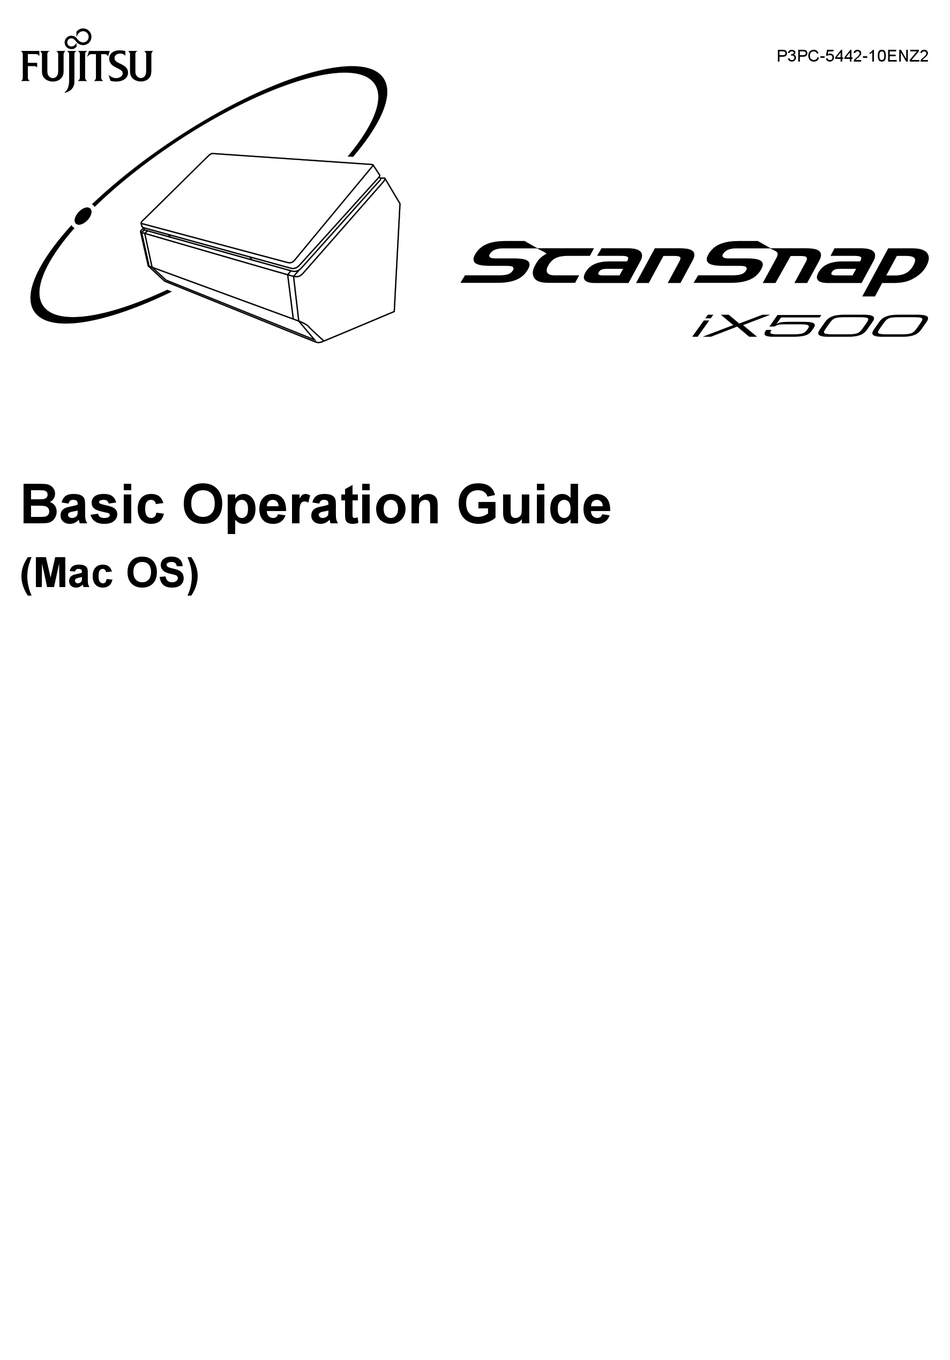 FUJITSU SCANSNAP IX500 BASIC OPERATION MANUAL Pdf Download | ManualsLib